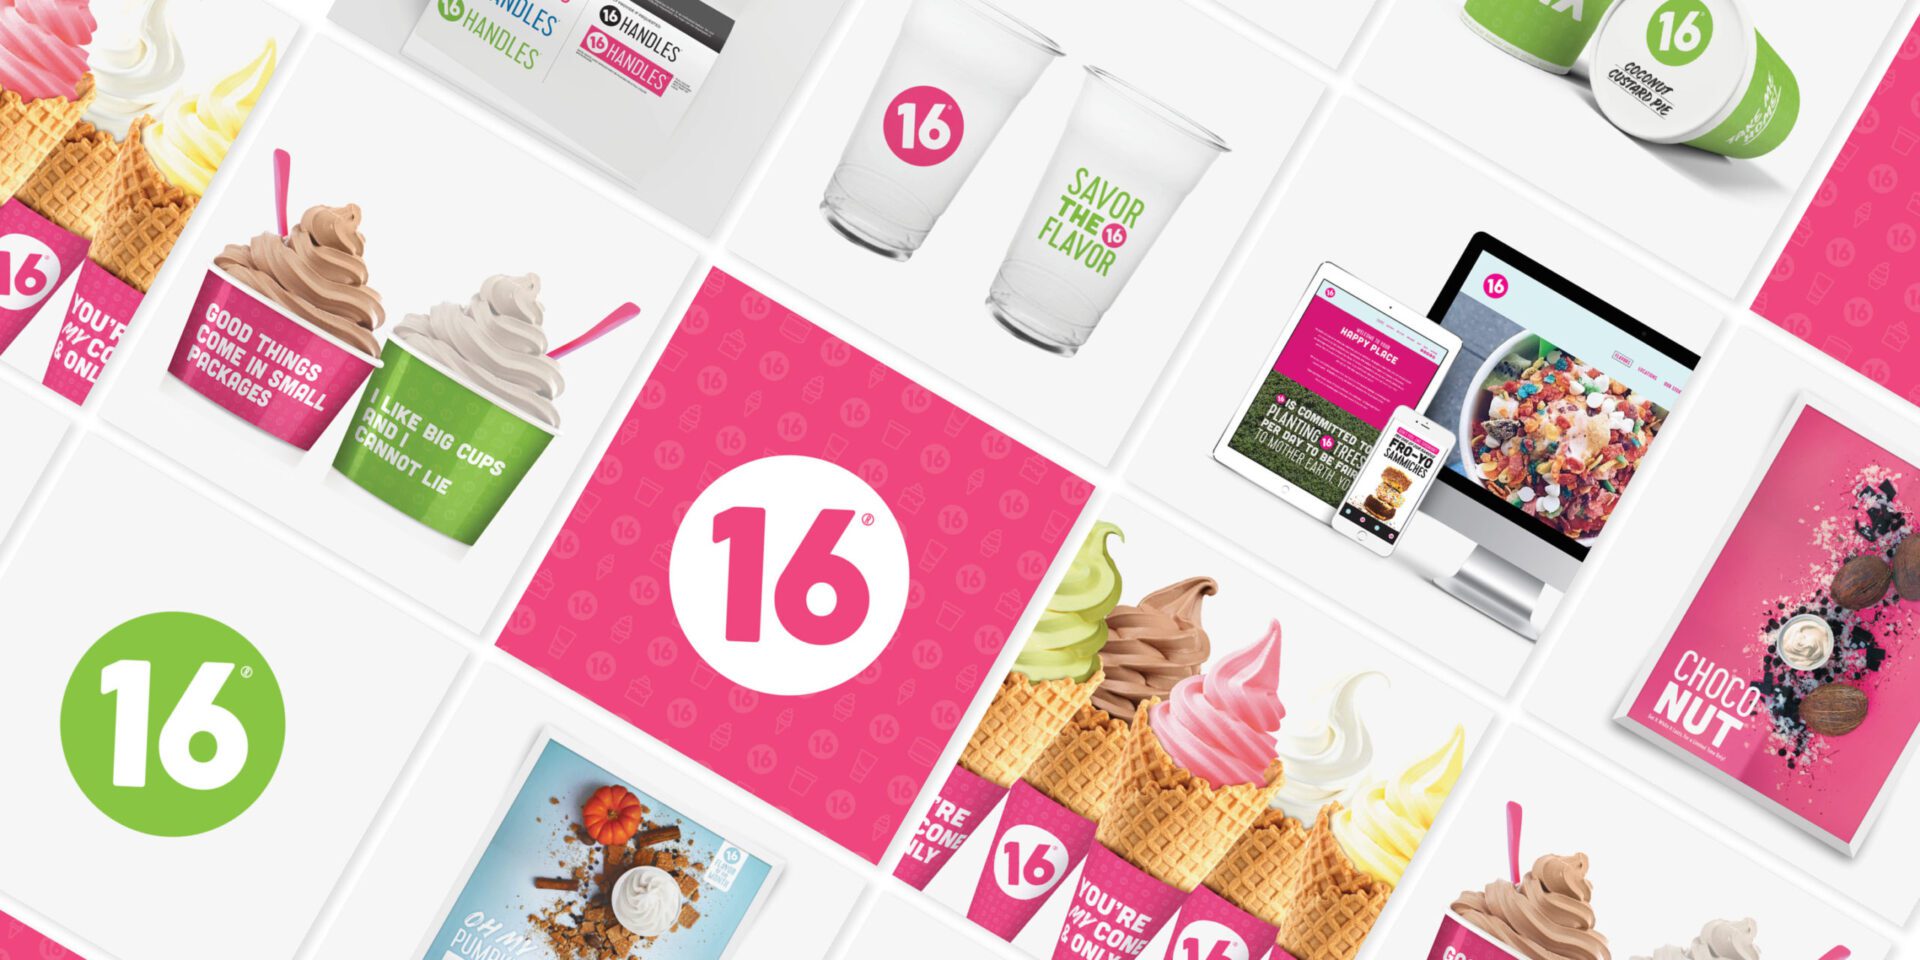 Restaurant branding agency for 16 handles ice cream